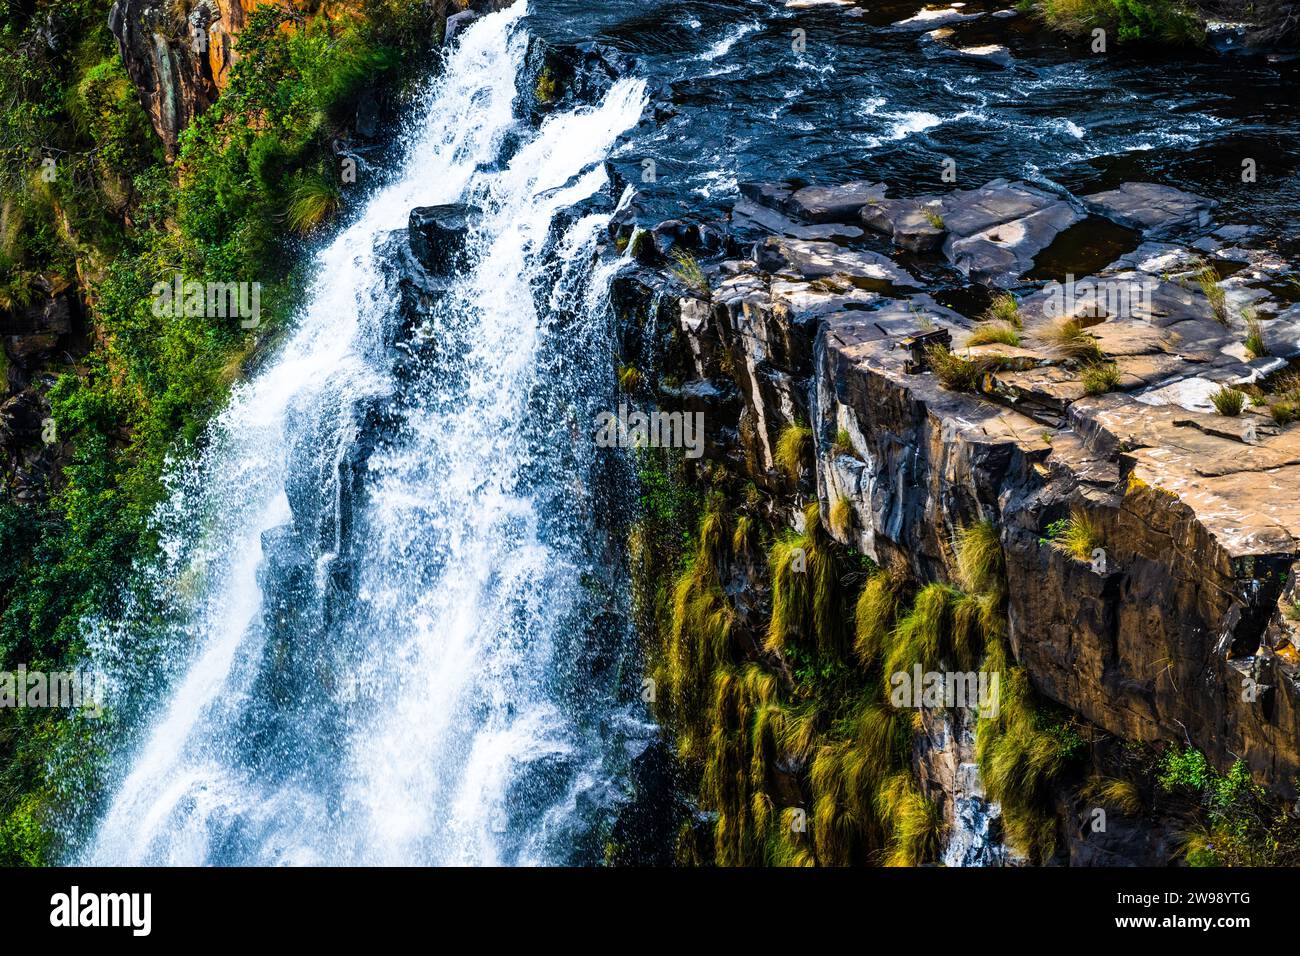 Un paisaje espectacular con una poderosa cascada que cae en cascada por una ladera escarpada de la montaña, vista desde un ángulo elevado Foto de stock